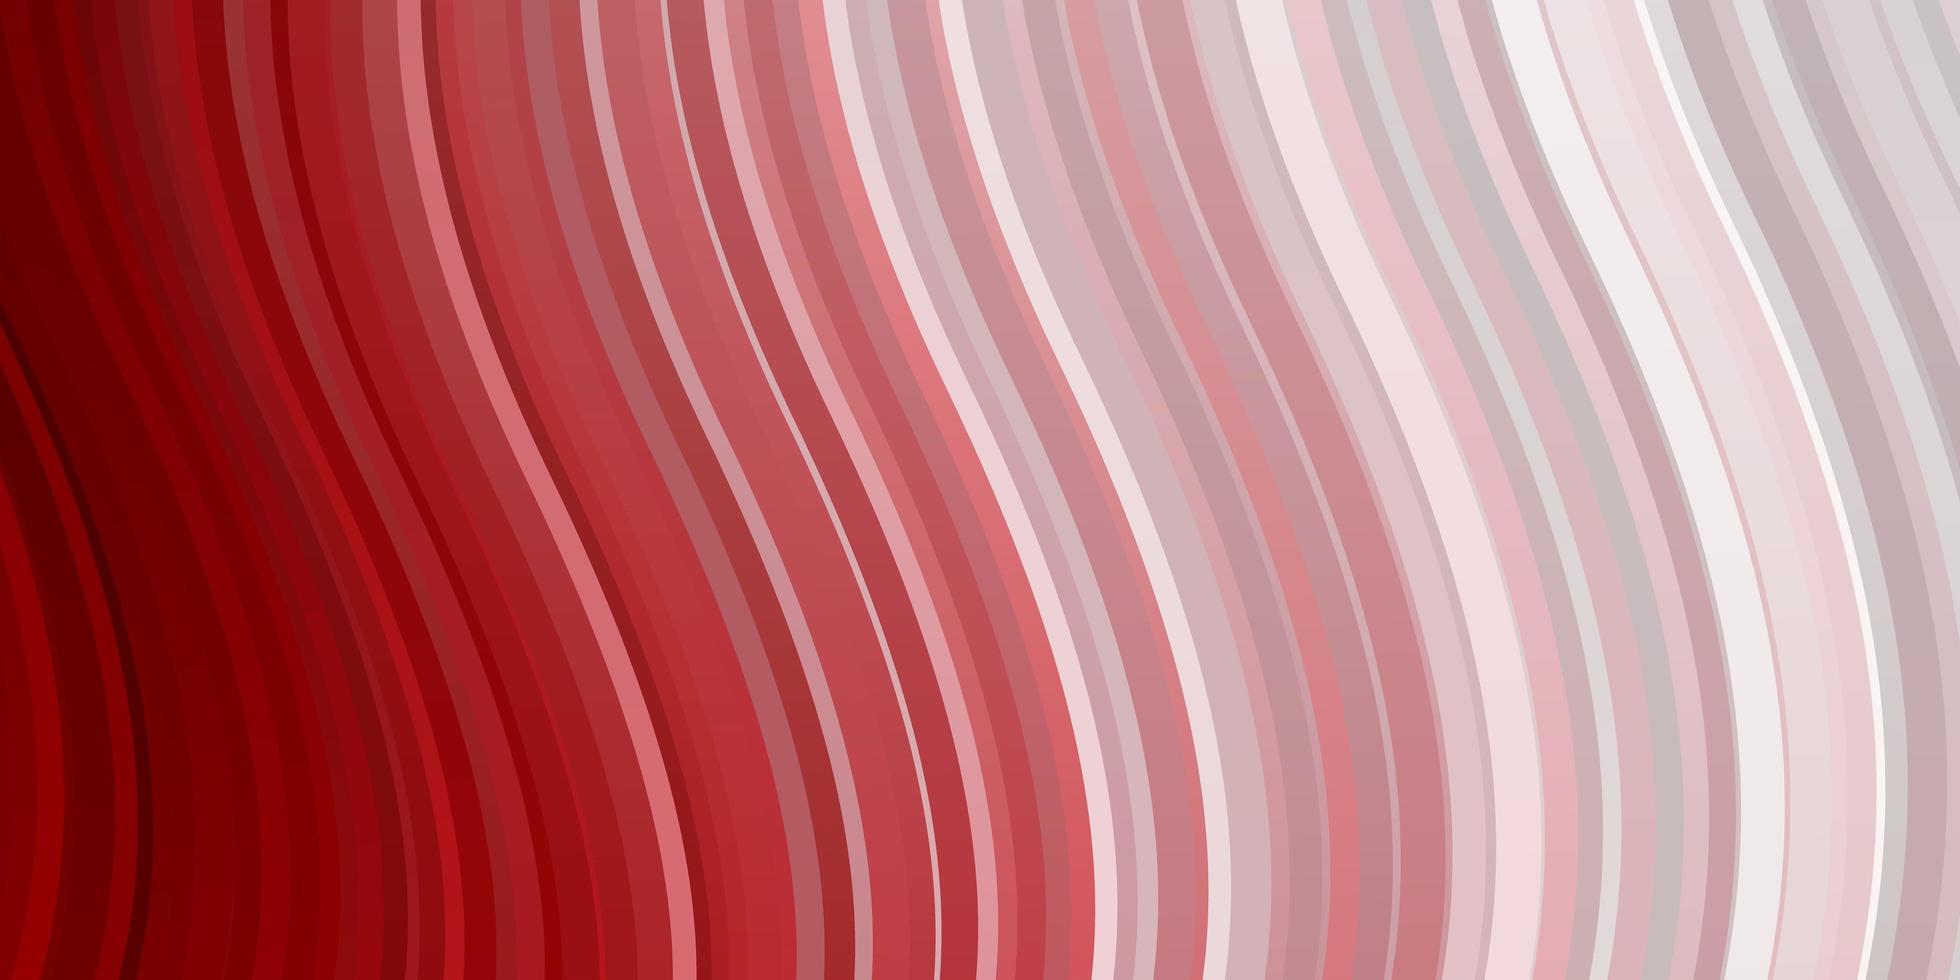 pano de fundo vector vermelho claro com curvas.